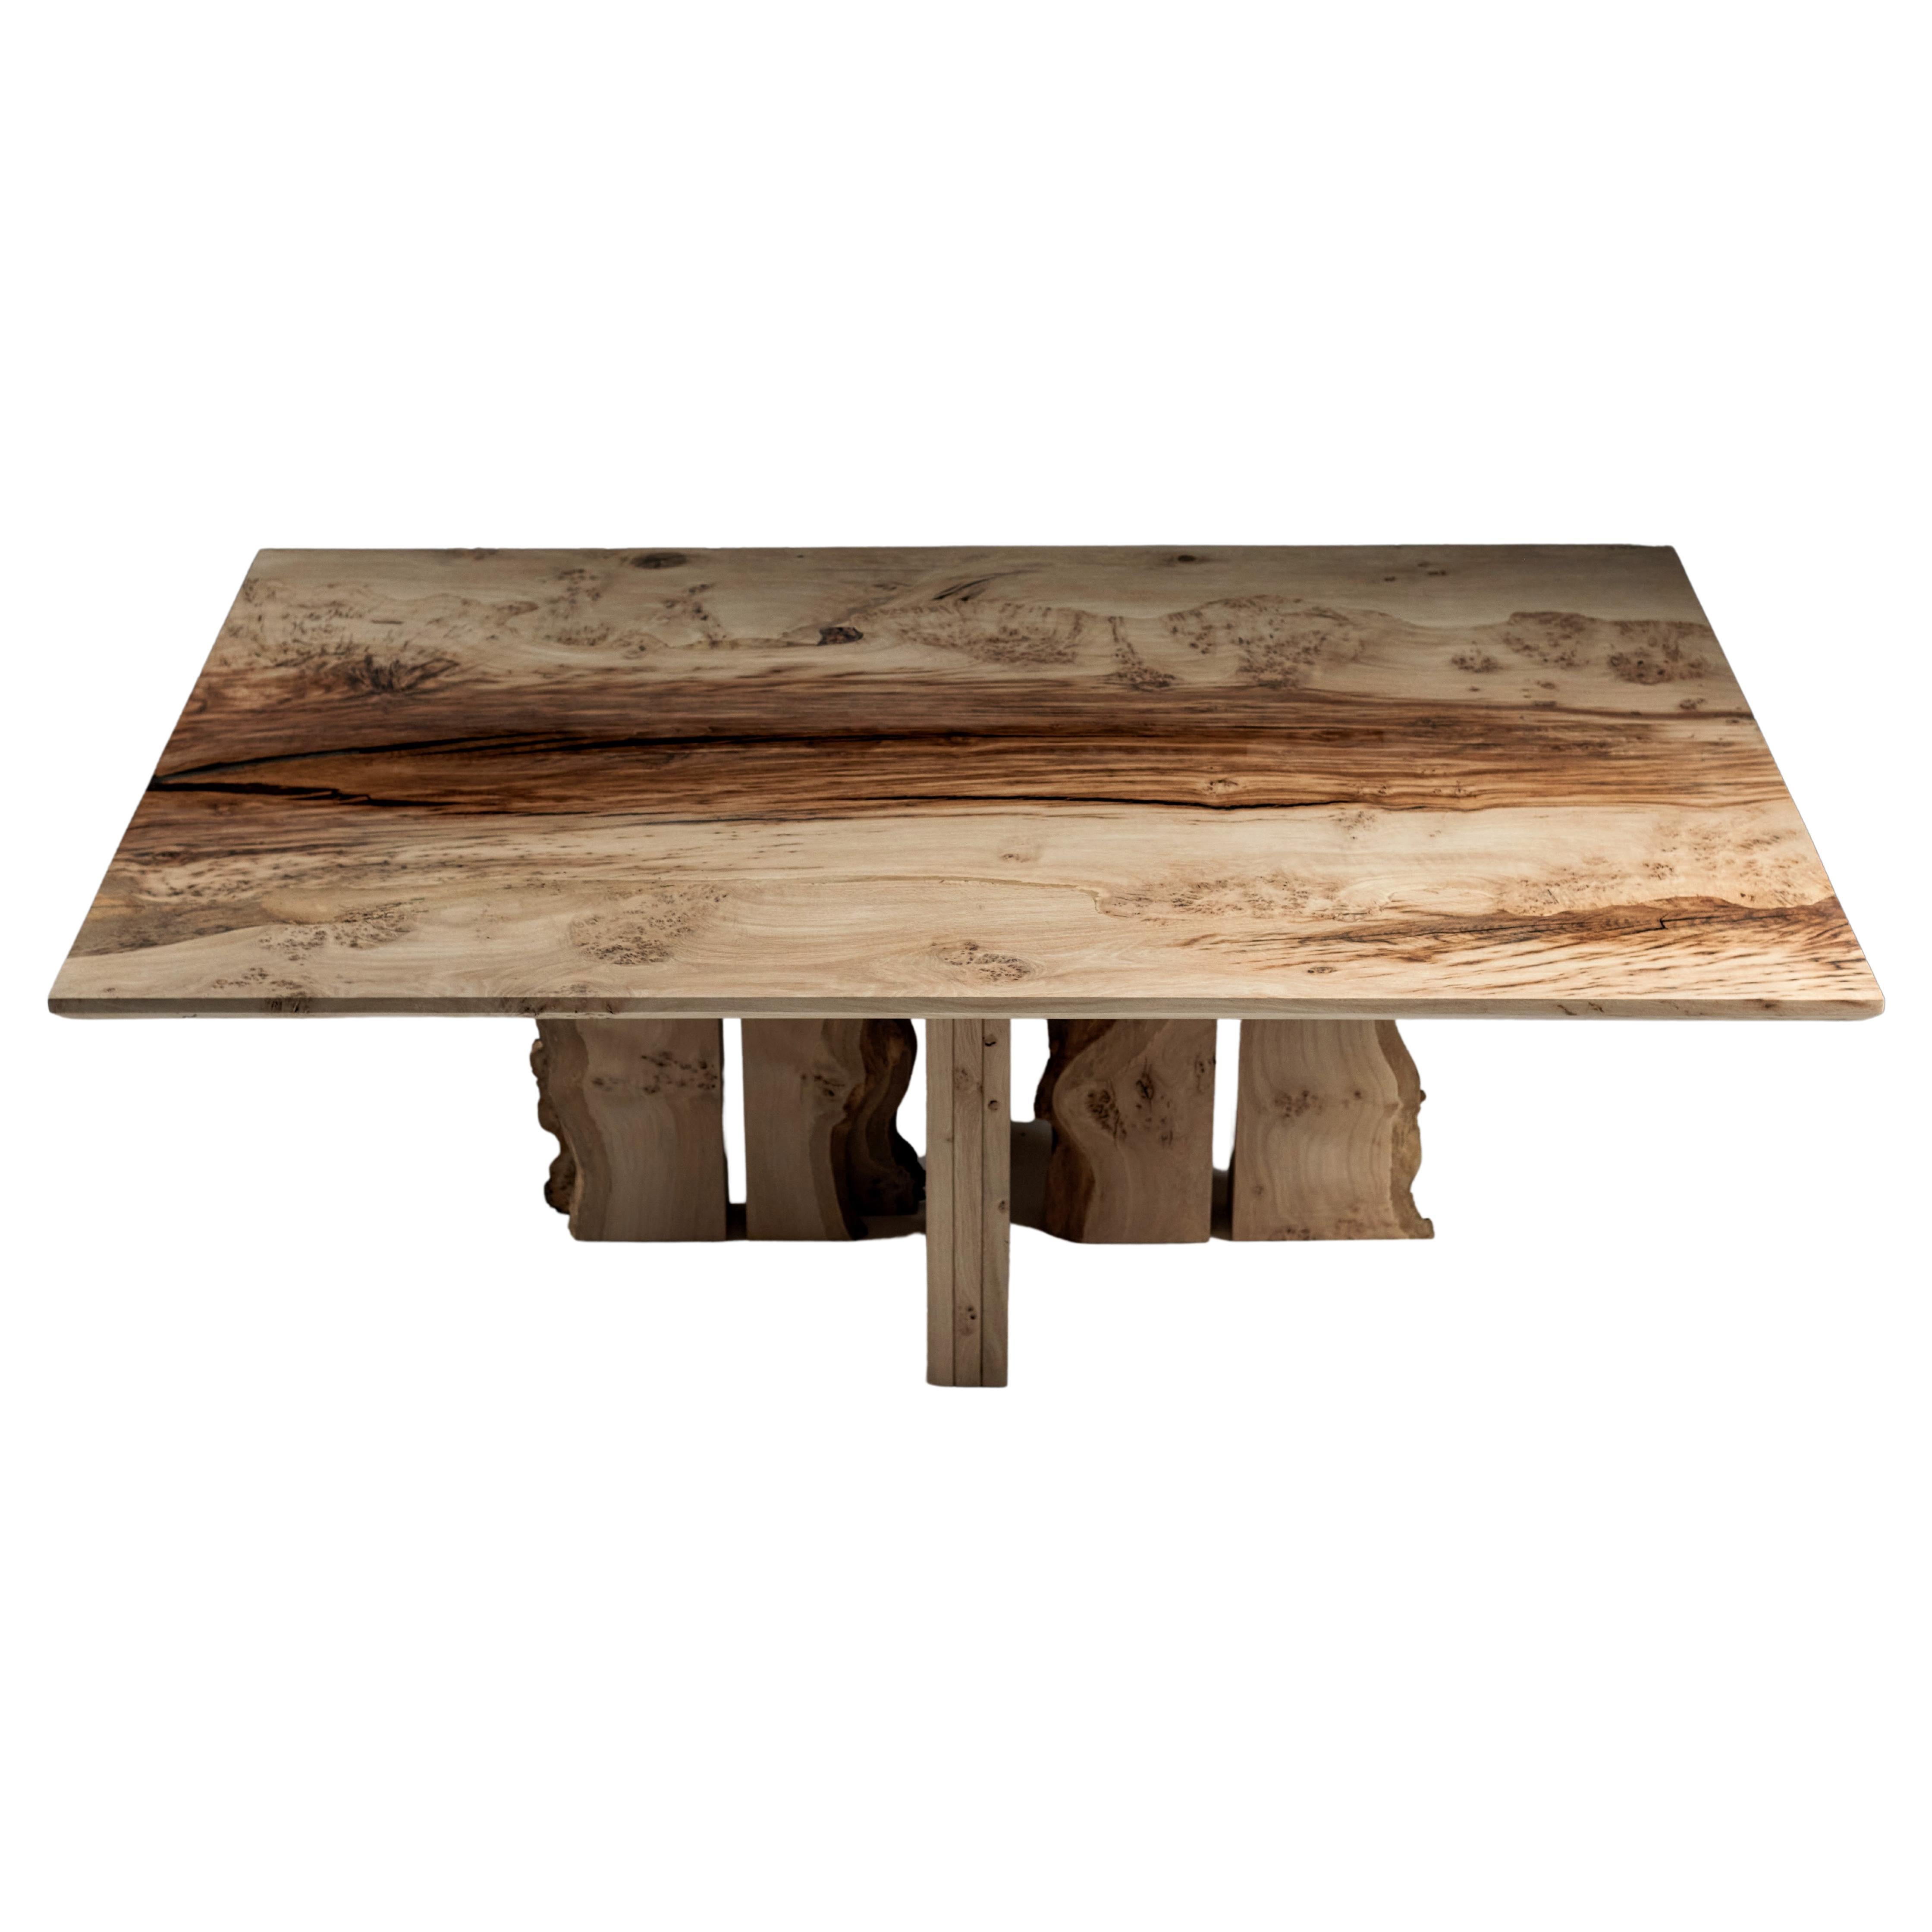 Table de salle à manger en chêne anglais massif, fabriquée à partir de deux dalles de bois assorties, jointes au centre.
Le chêne séché au four présente des fentes de séchage qui se caractérisent par une résine claire avec une teinte d'ébène.
La